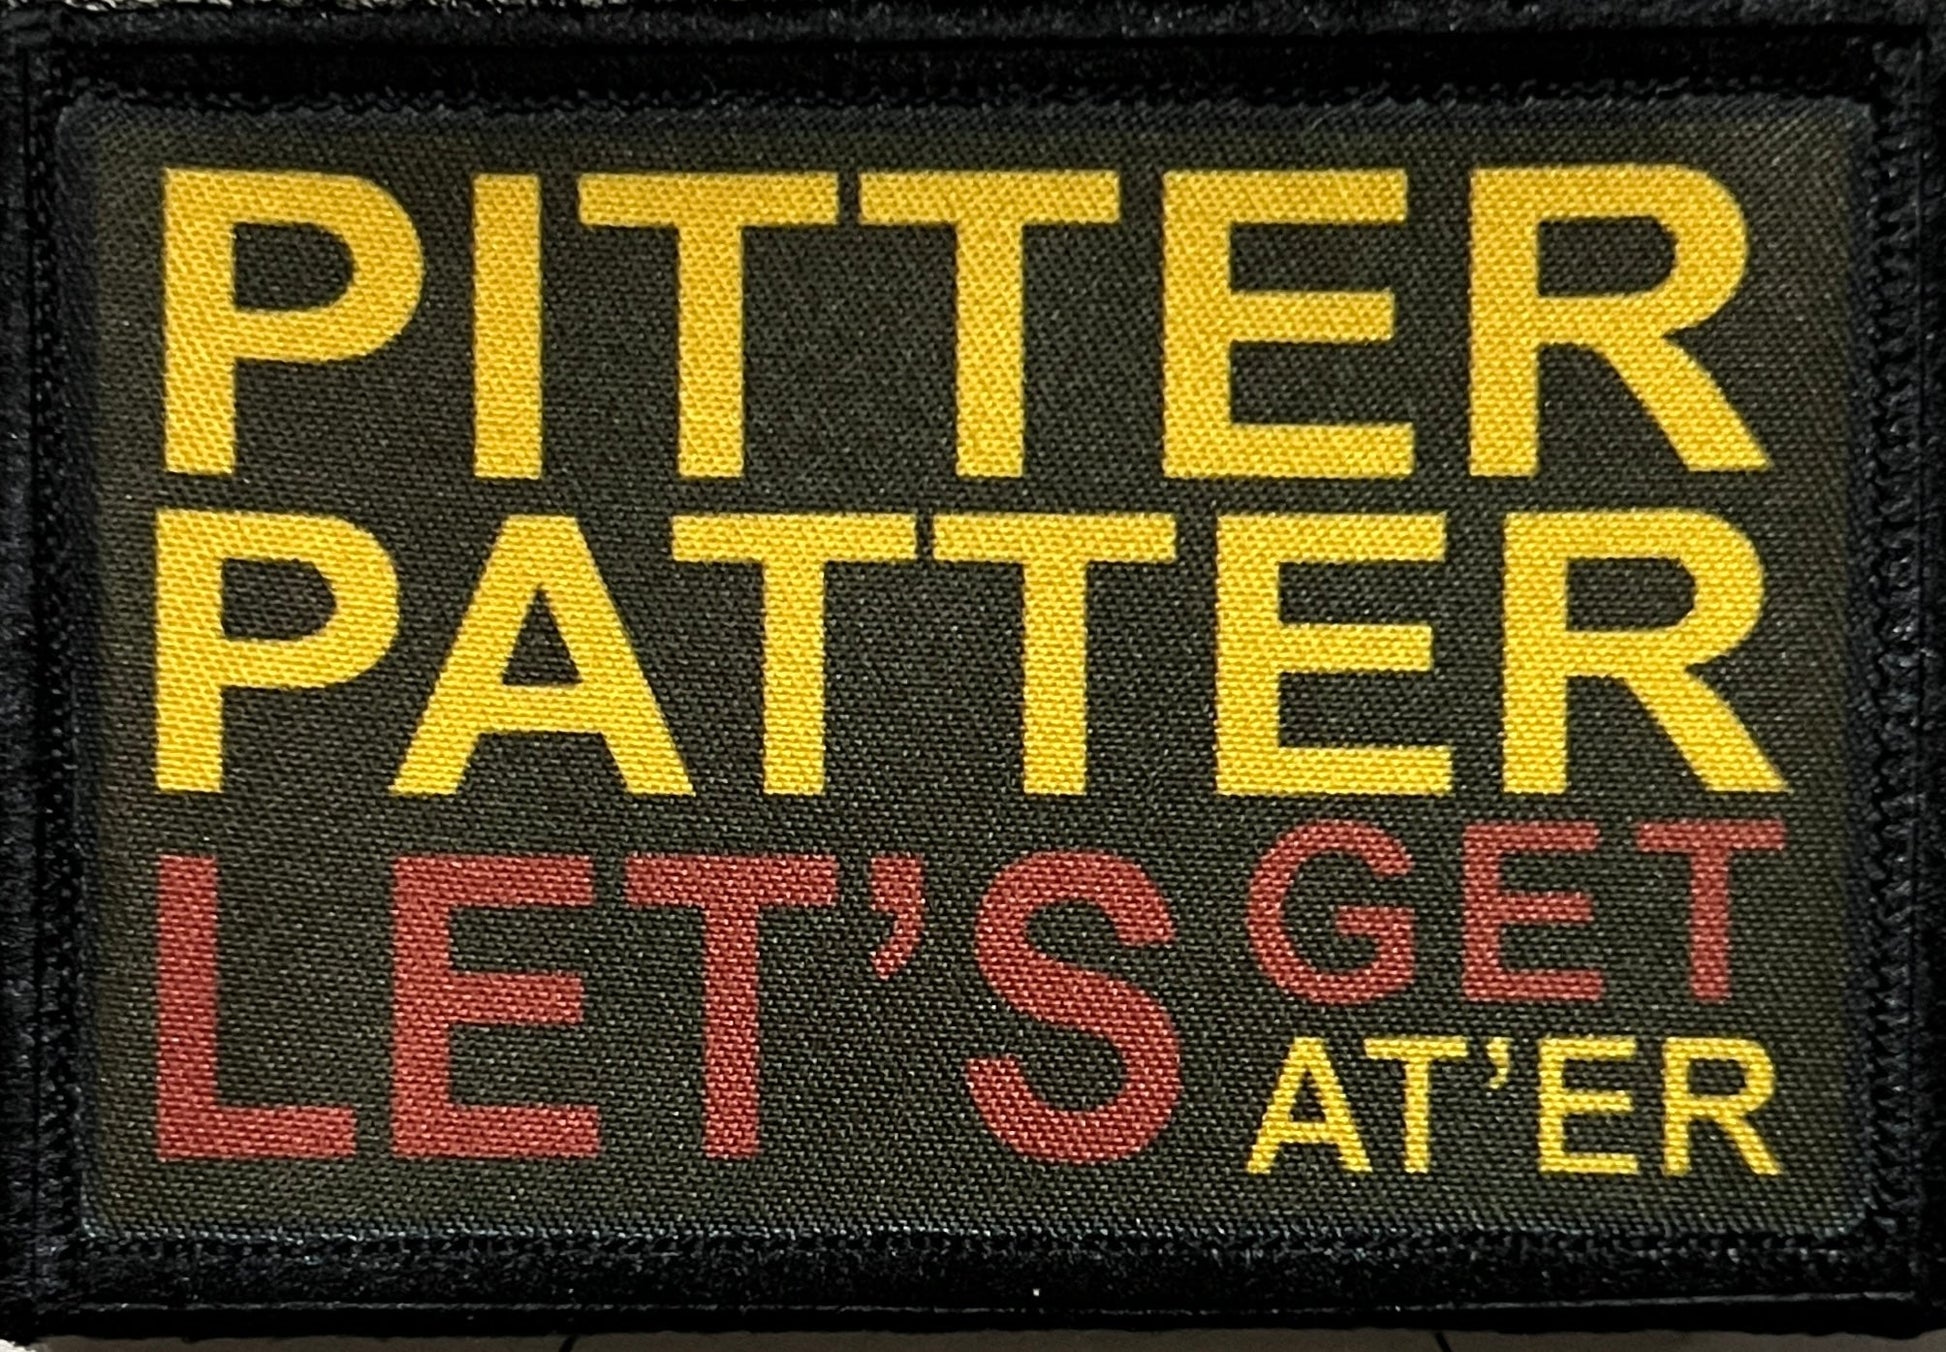 Pitter Patter Let's Get At'er